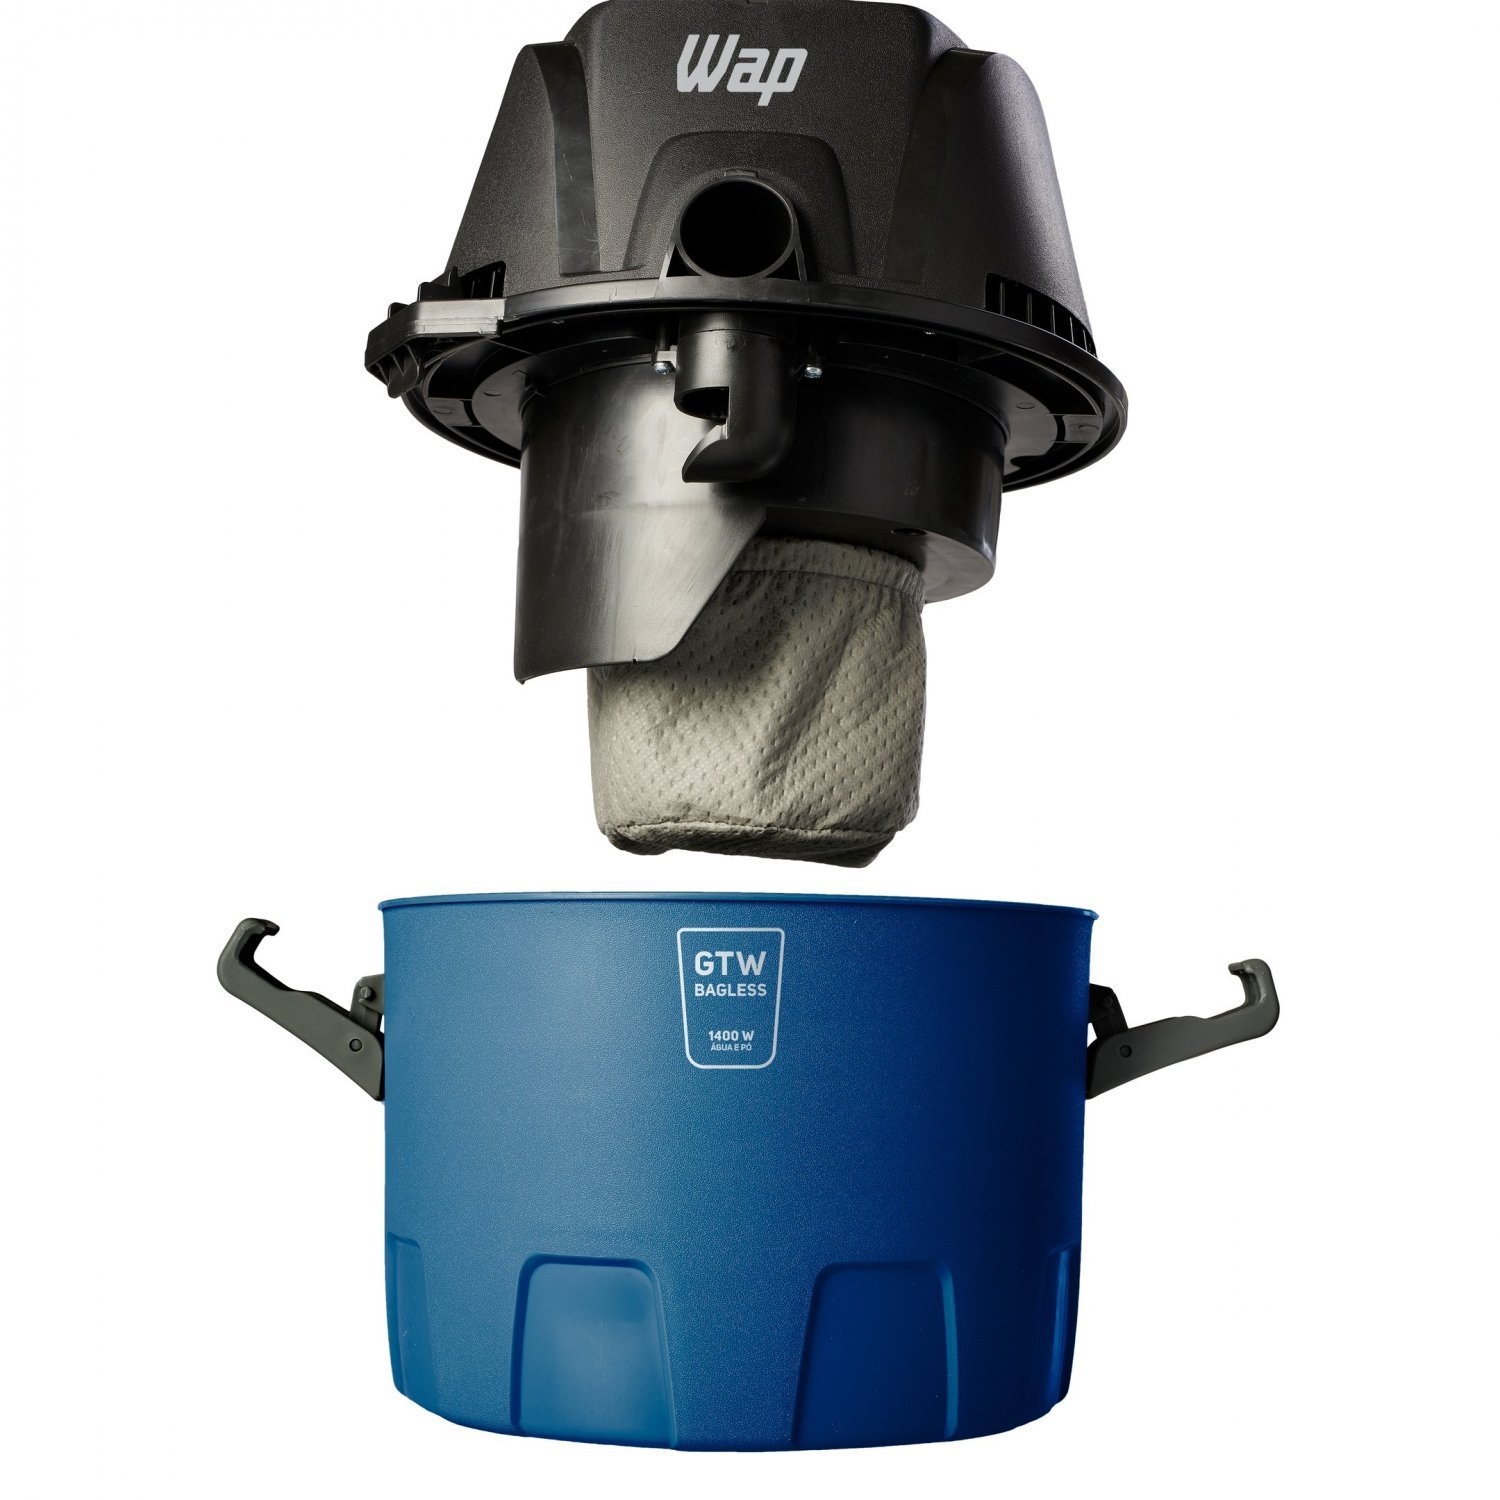 Aspirador de Água e Pó WAP GTW Bagless Alça Ergonômica 6L com Bocal de Sopro 1400W 220V Azul/Preto - 7